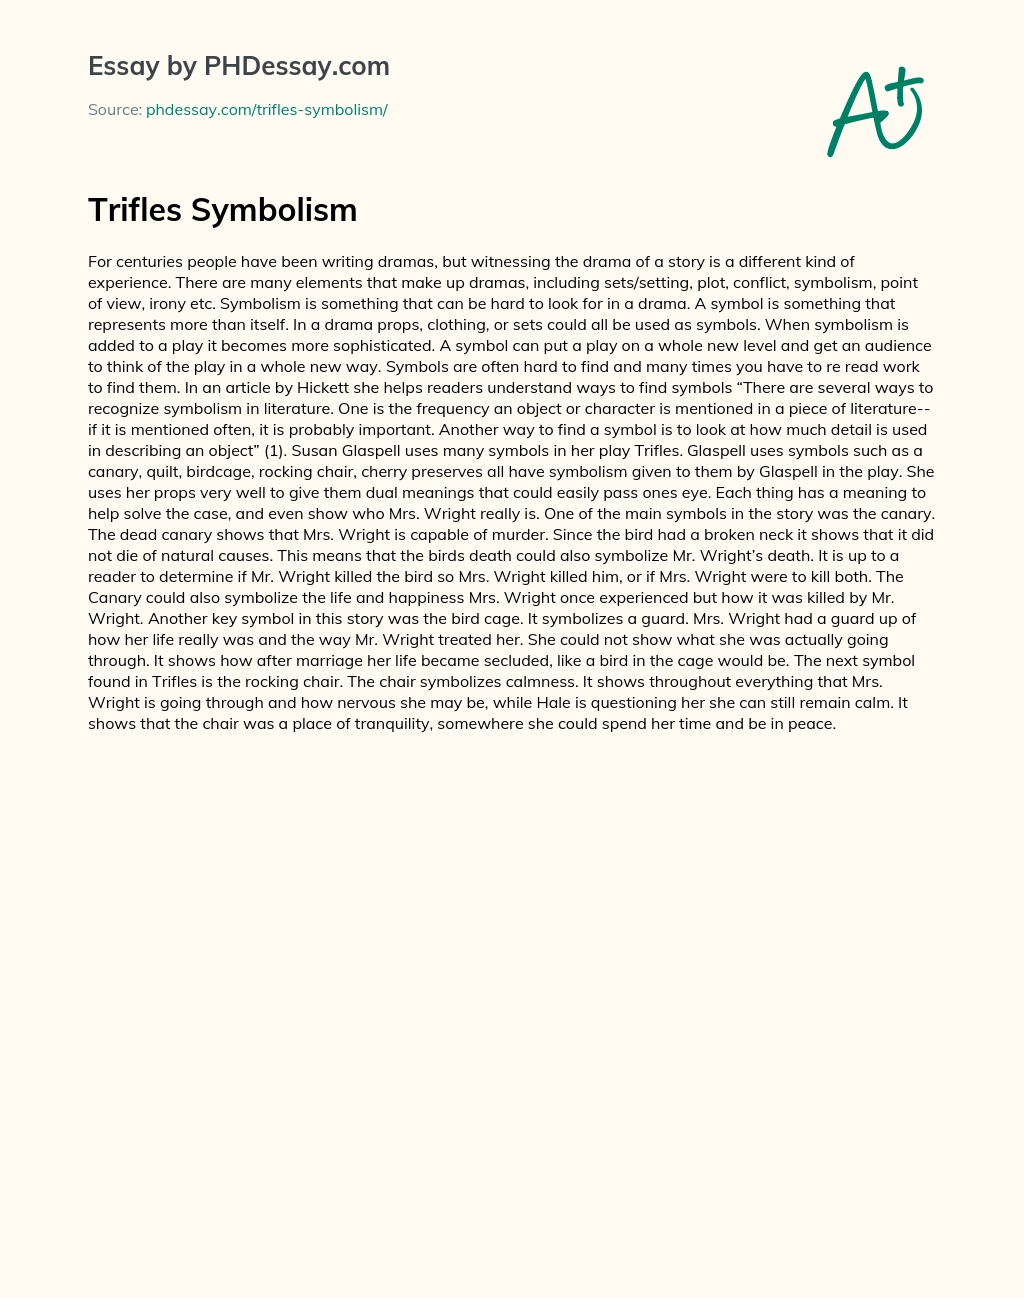 Trifles Symbolism essay